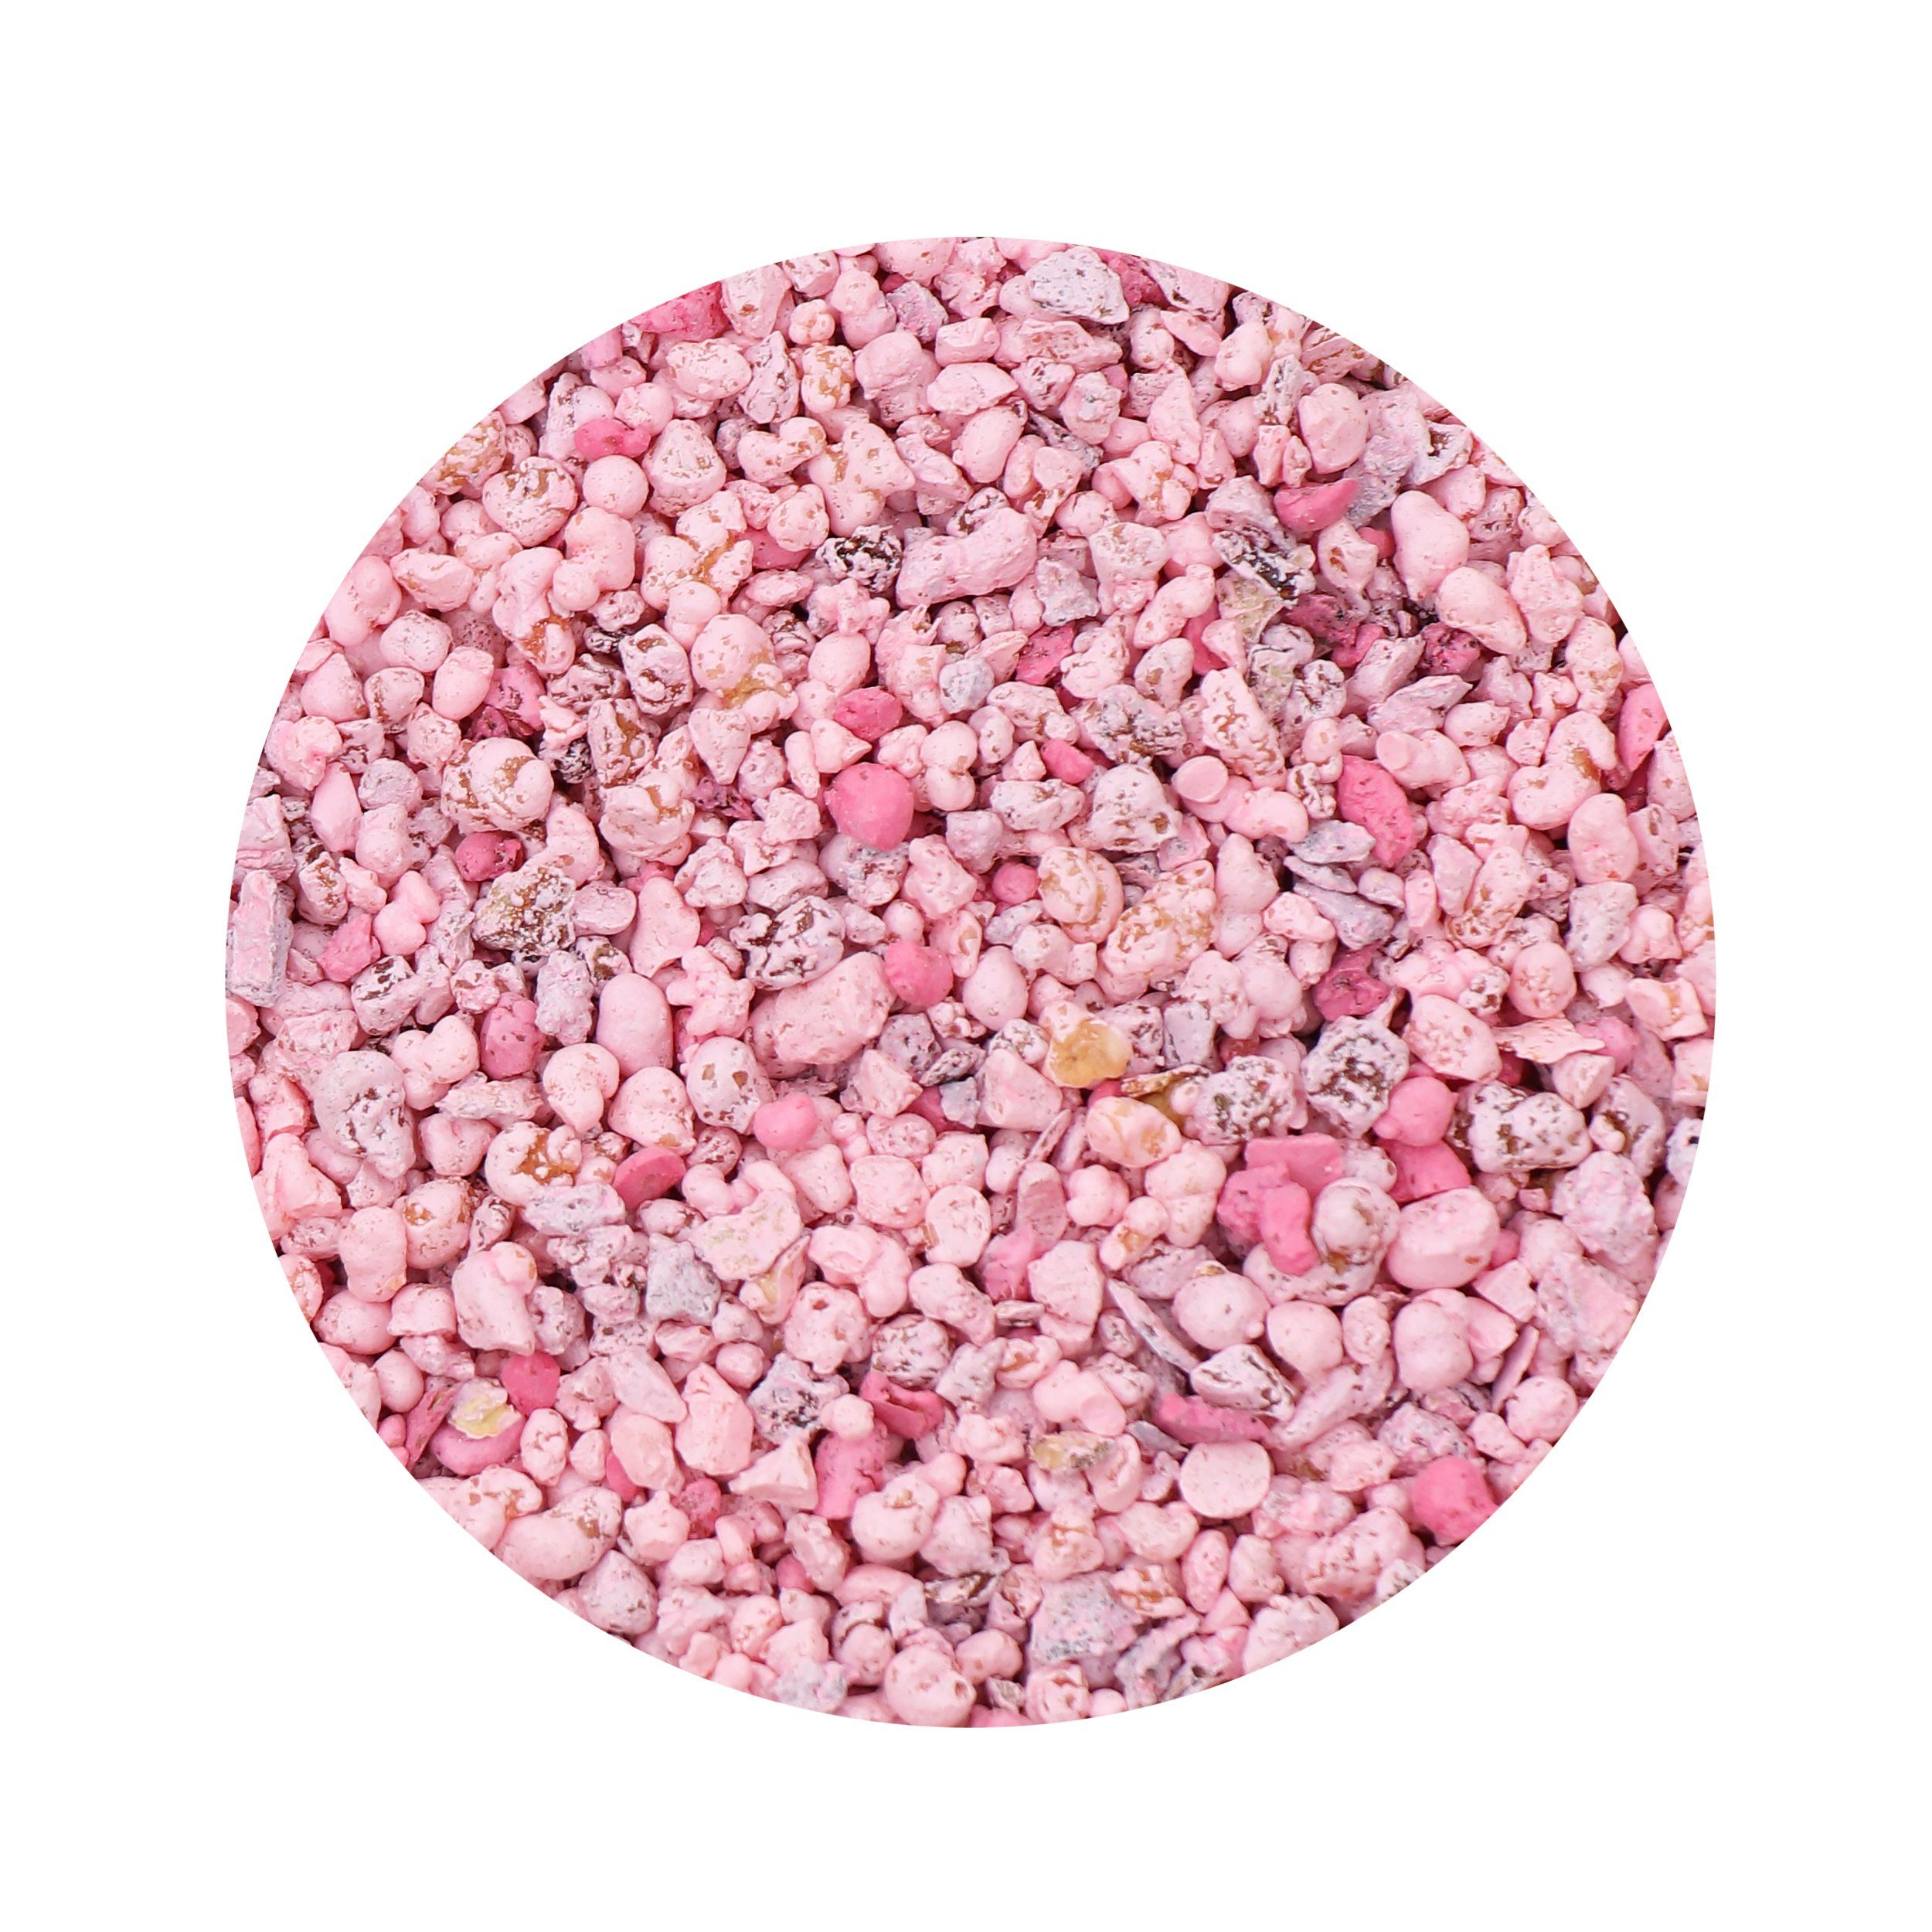 NKlaus Räucherstäbchen-Halter 100g Weihrauch Pink 100% naturreine Olibaum Weihra, Weihrauch, Harze, Räuchermischung, Weihrauchmischung